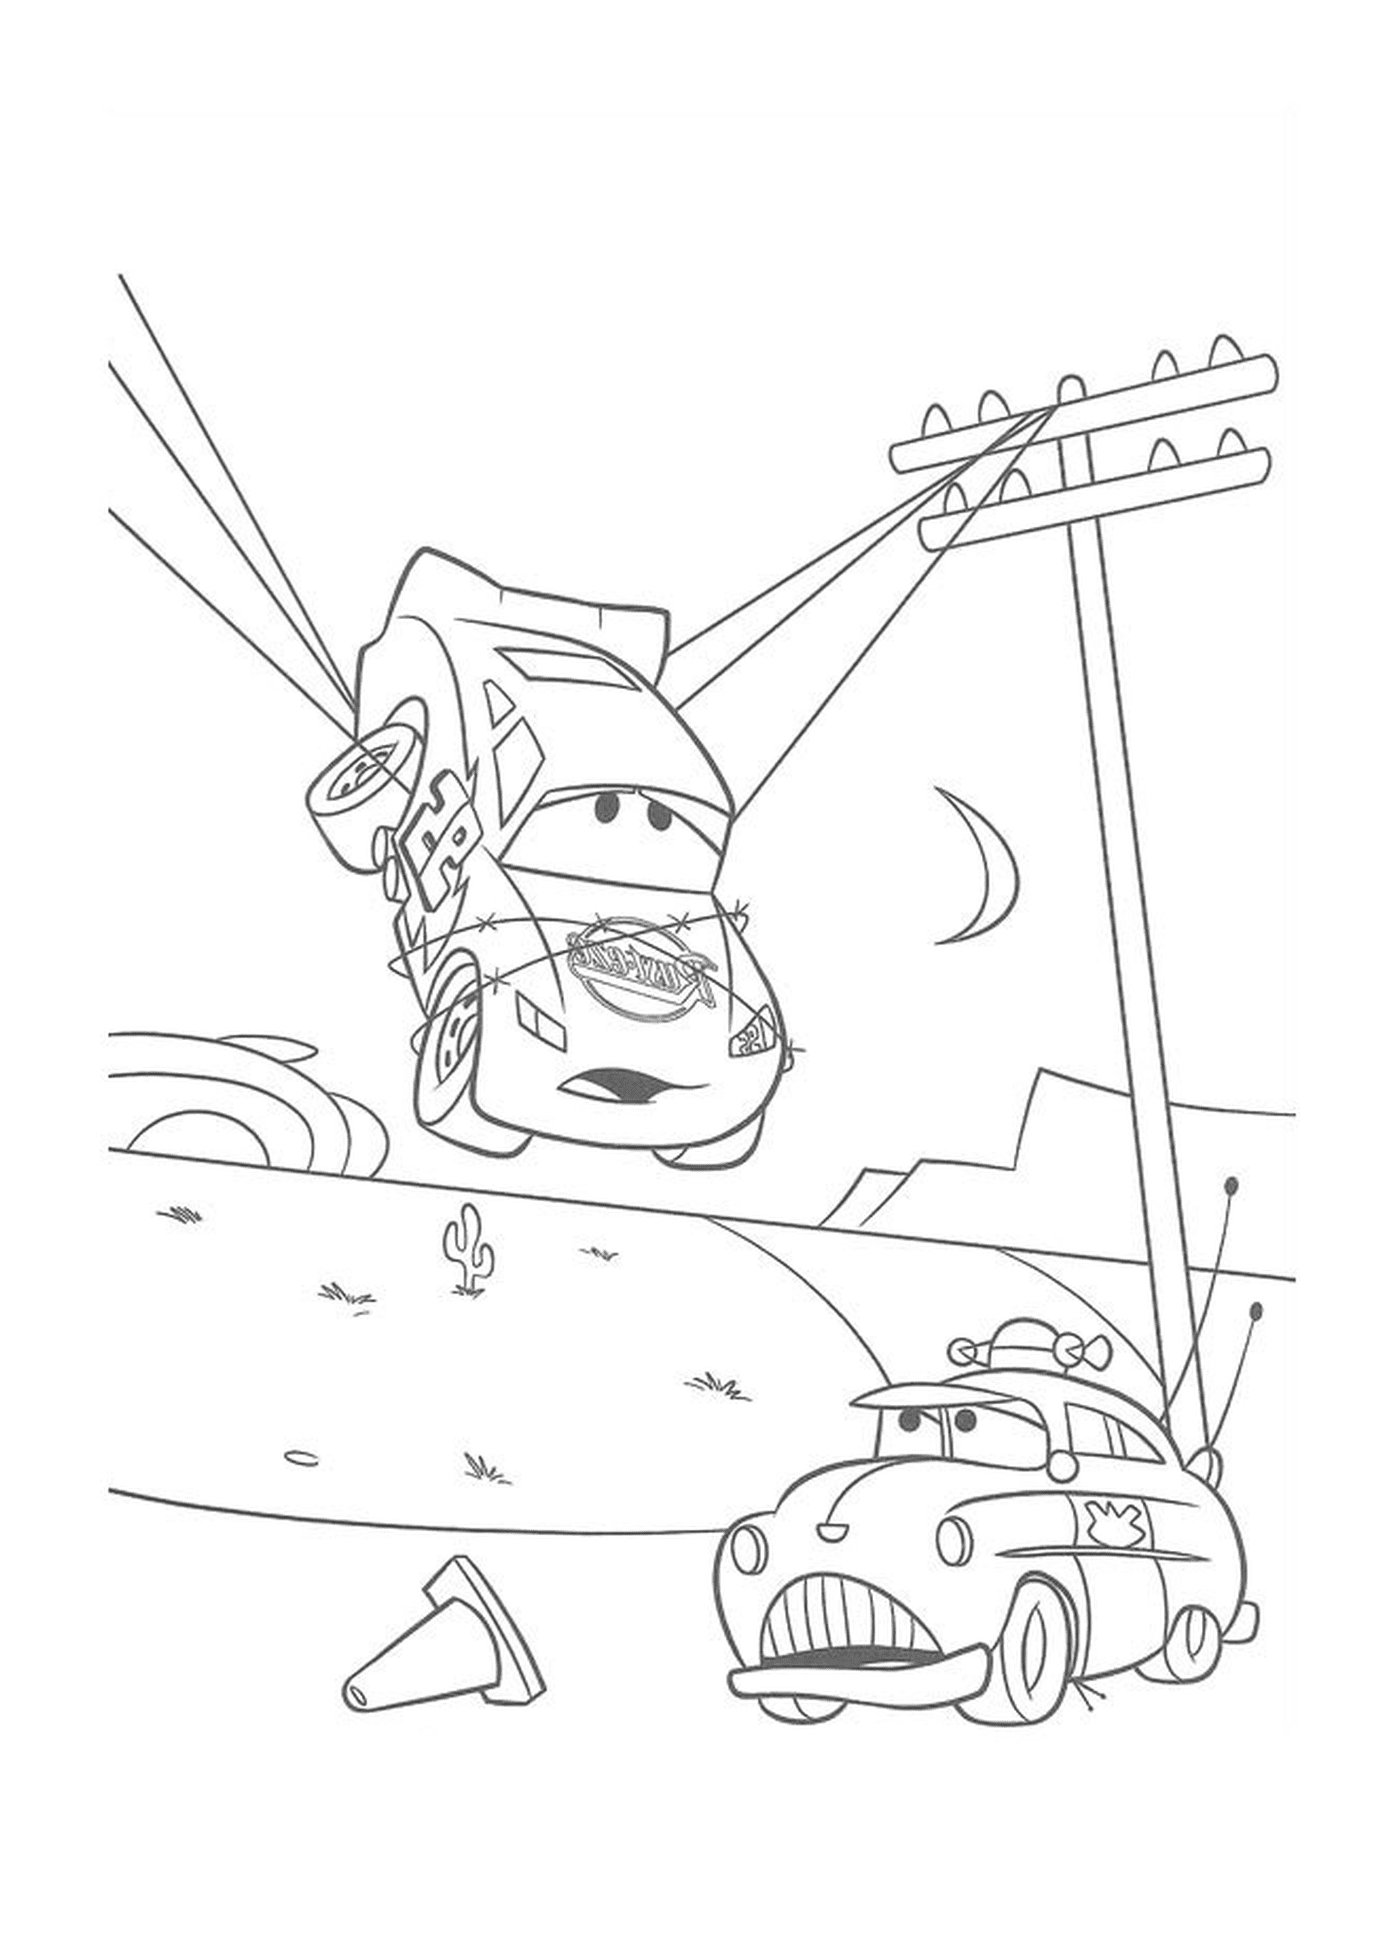  Flash McQueen y Tow Mater suspendidos 